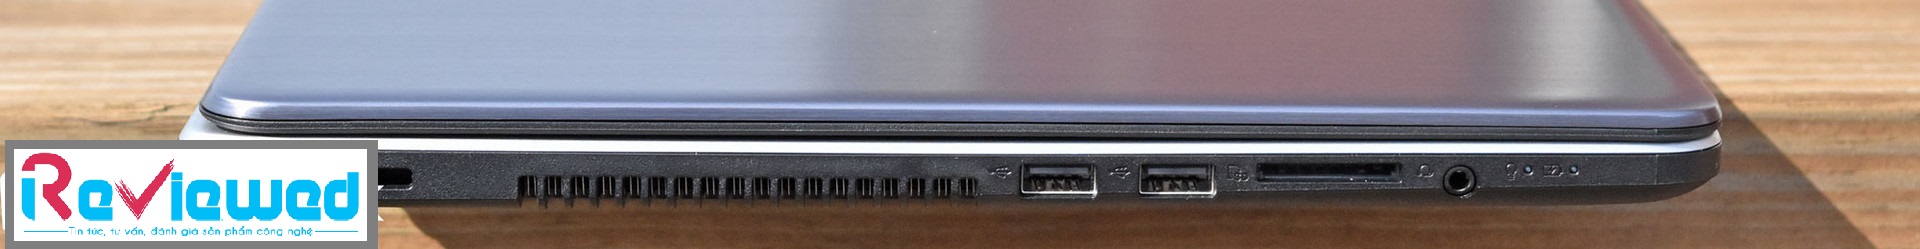 Đánh giá Asus VivoBook Pro 17 N705UD: Mạnh mẽ - giá vừa phải, Chuyên trang tư vấn laptop